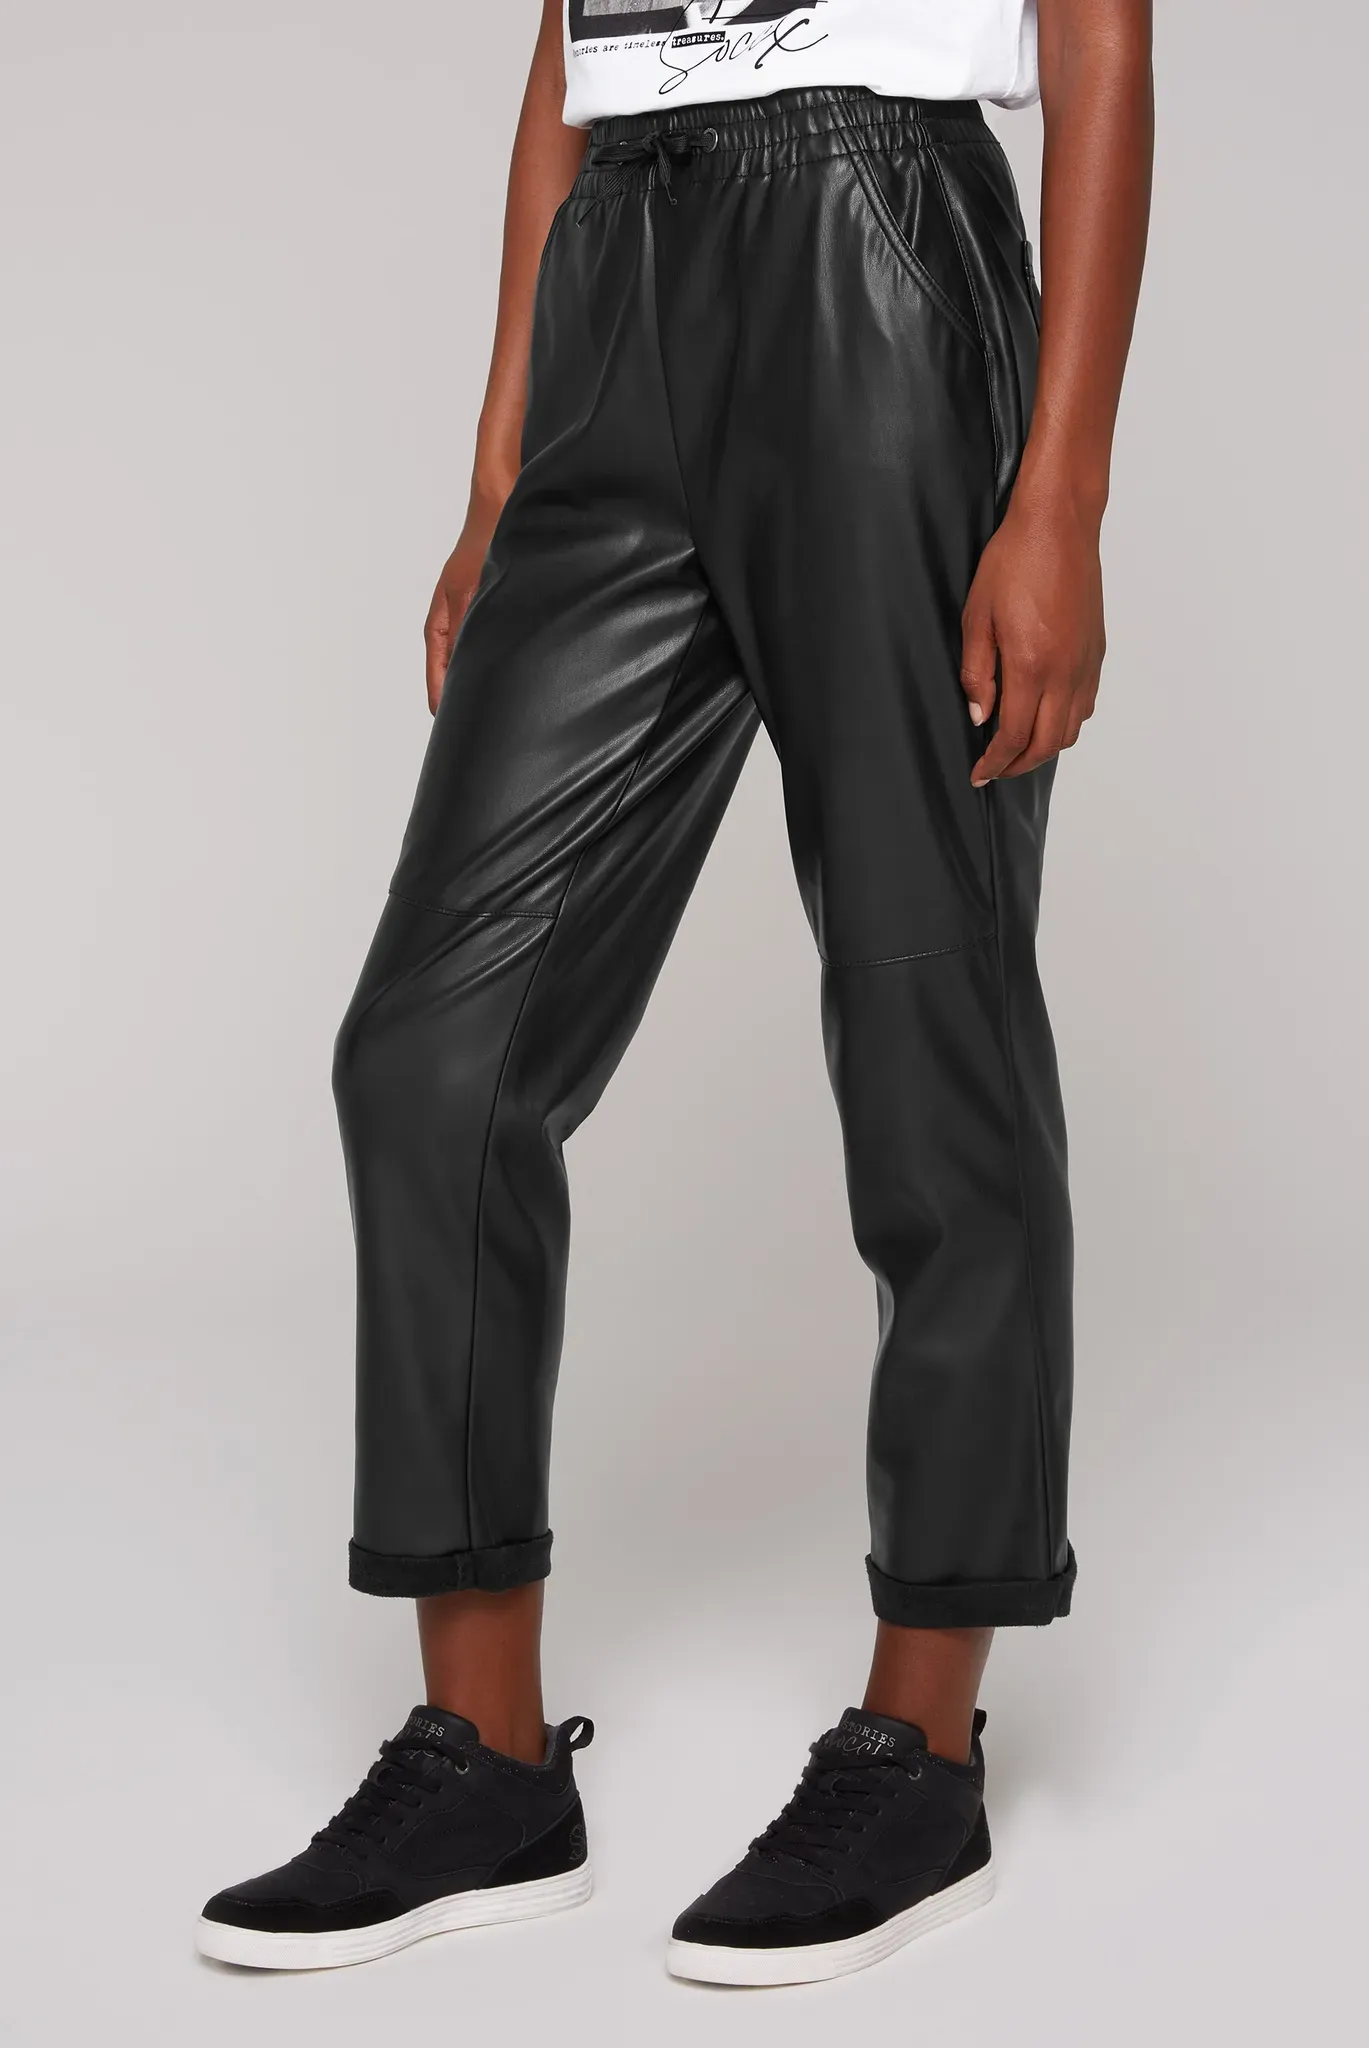 Lederimitathose SOCCX Gr. XL, Normalgrößen, schwarz Damen Hosen Kunstlederhosen mit Gesäßtaschen